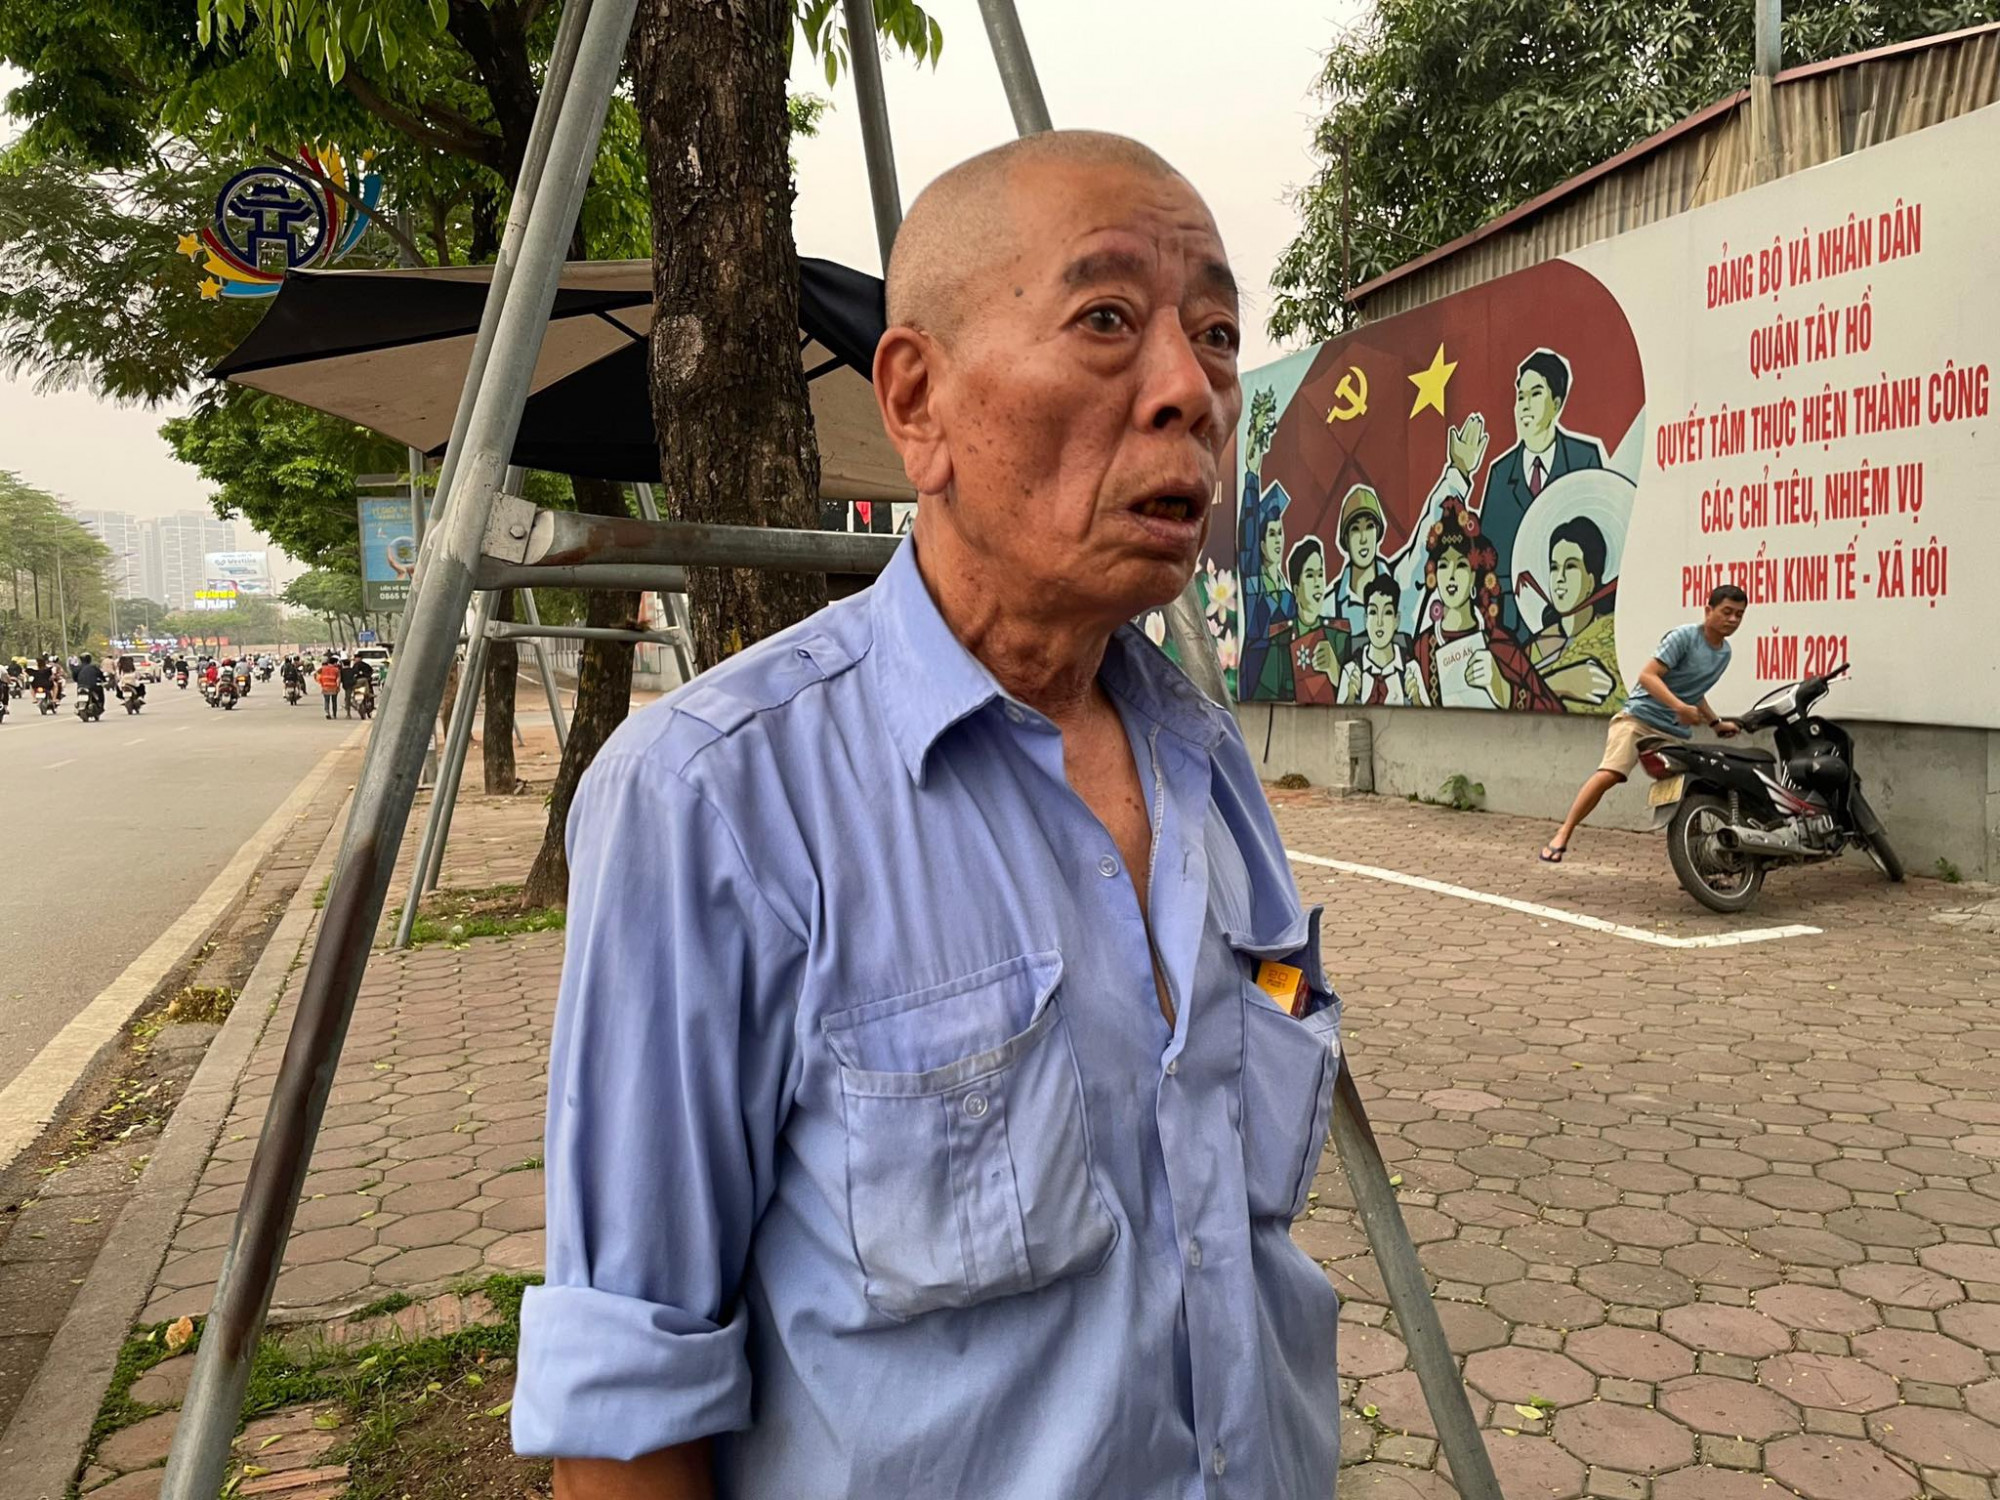 Ông Nguyễn Chiến Thắng kể lại diễn biến vụ tai nạn.